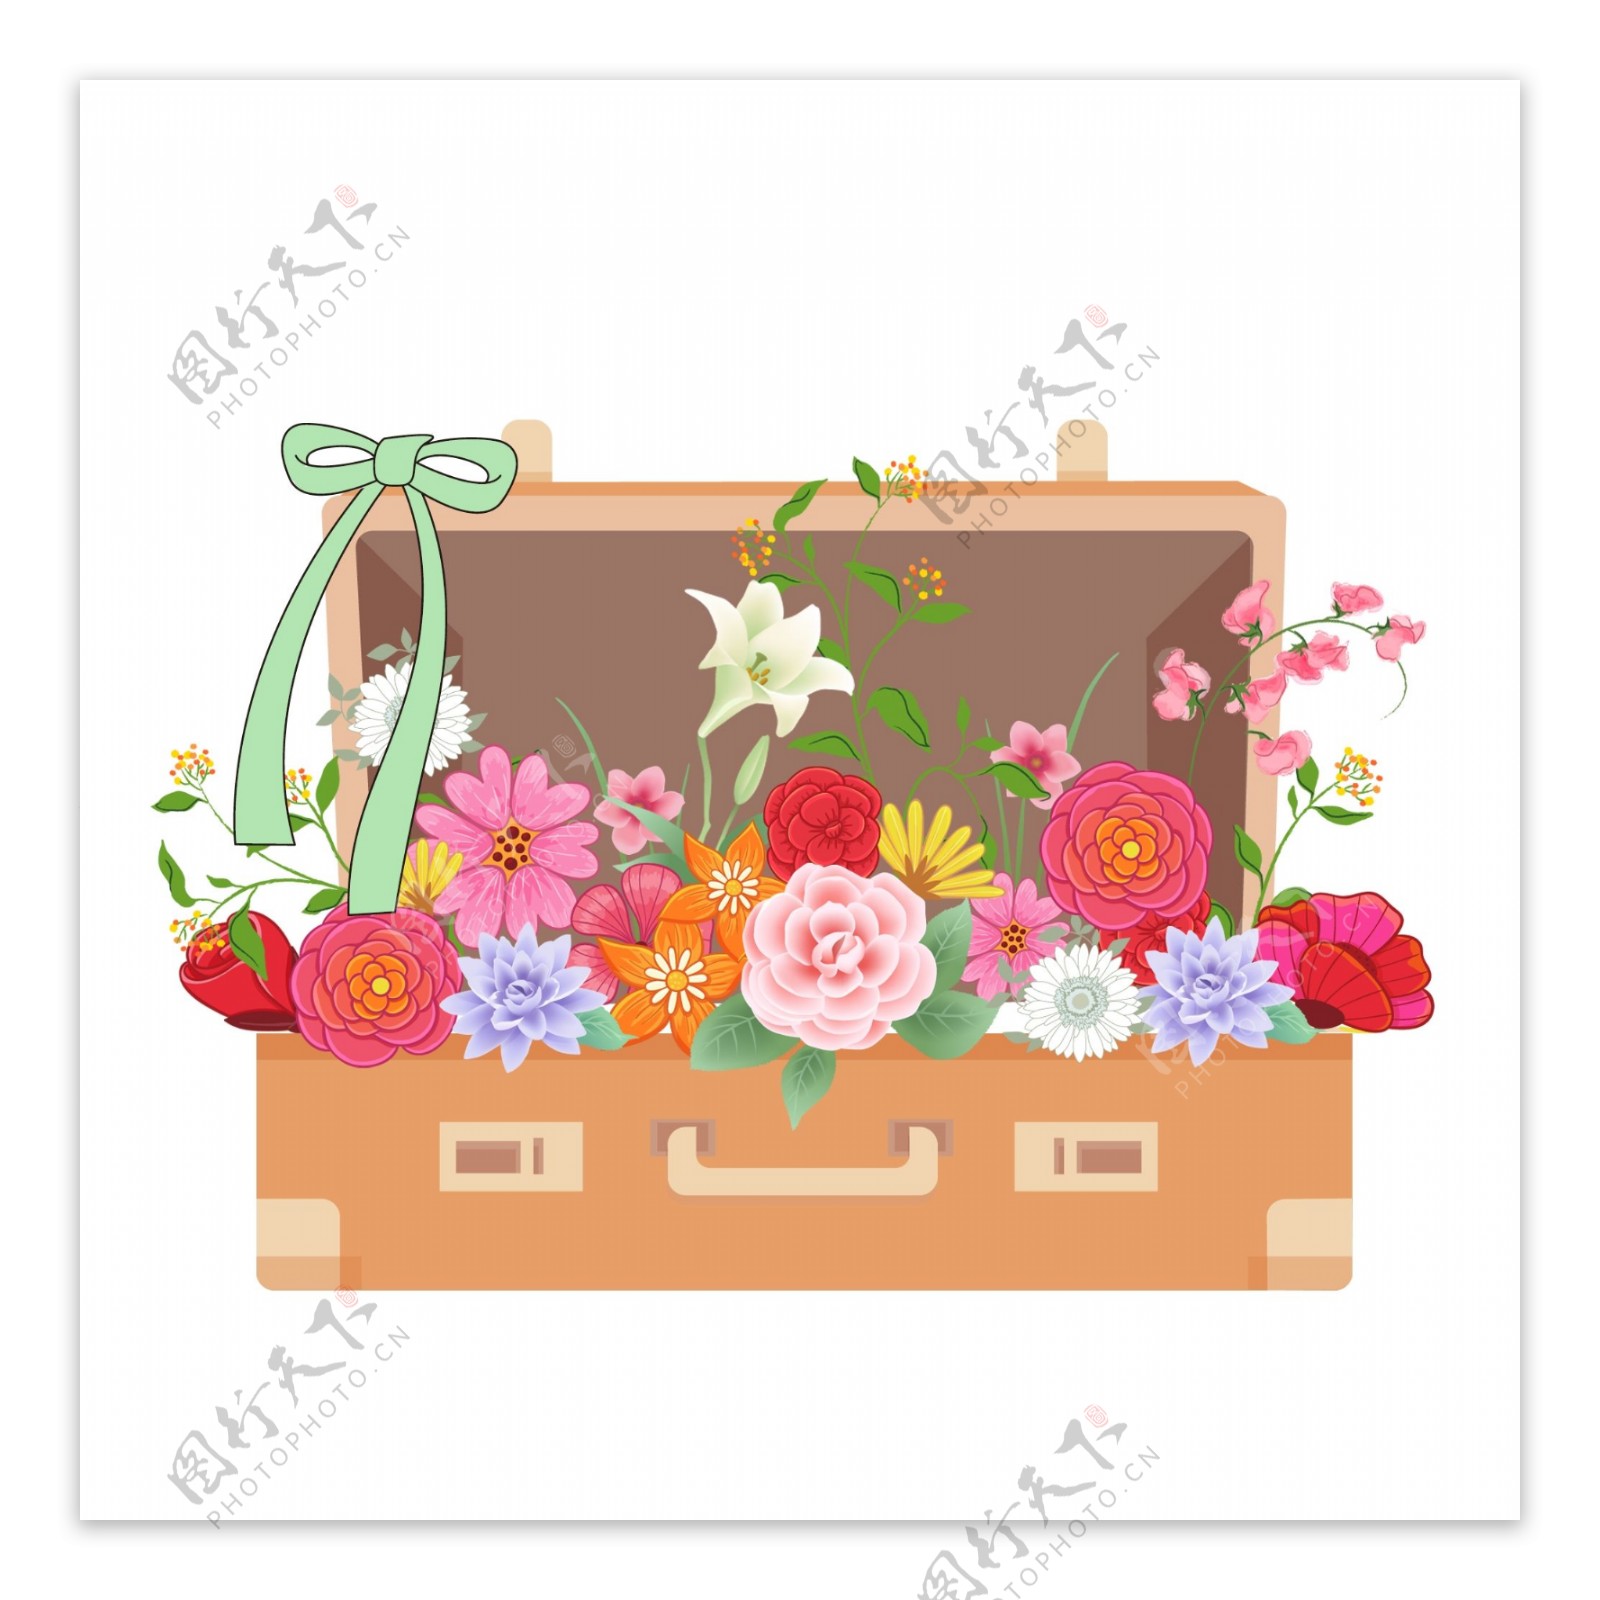 装满鲜花的行李箱